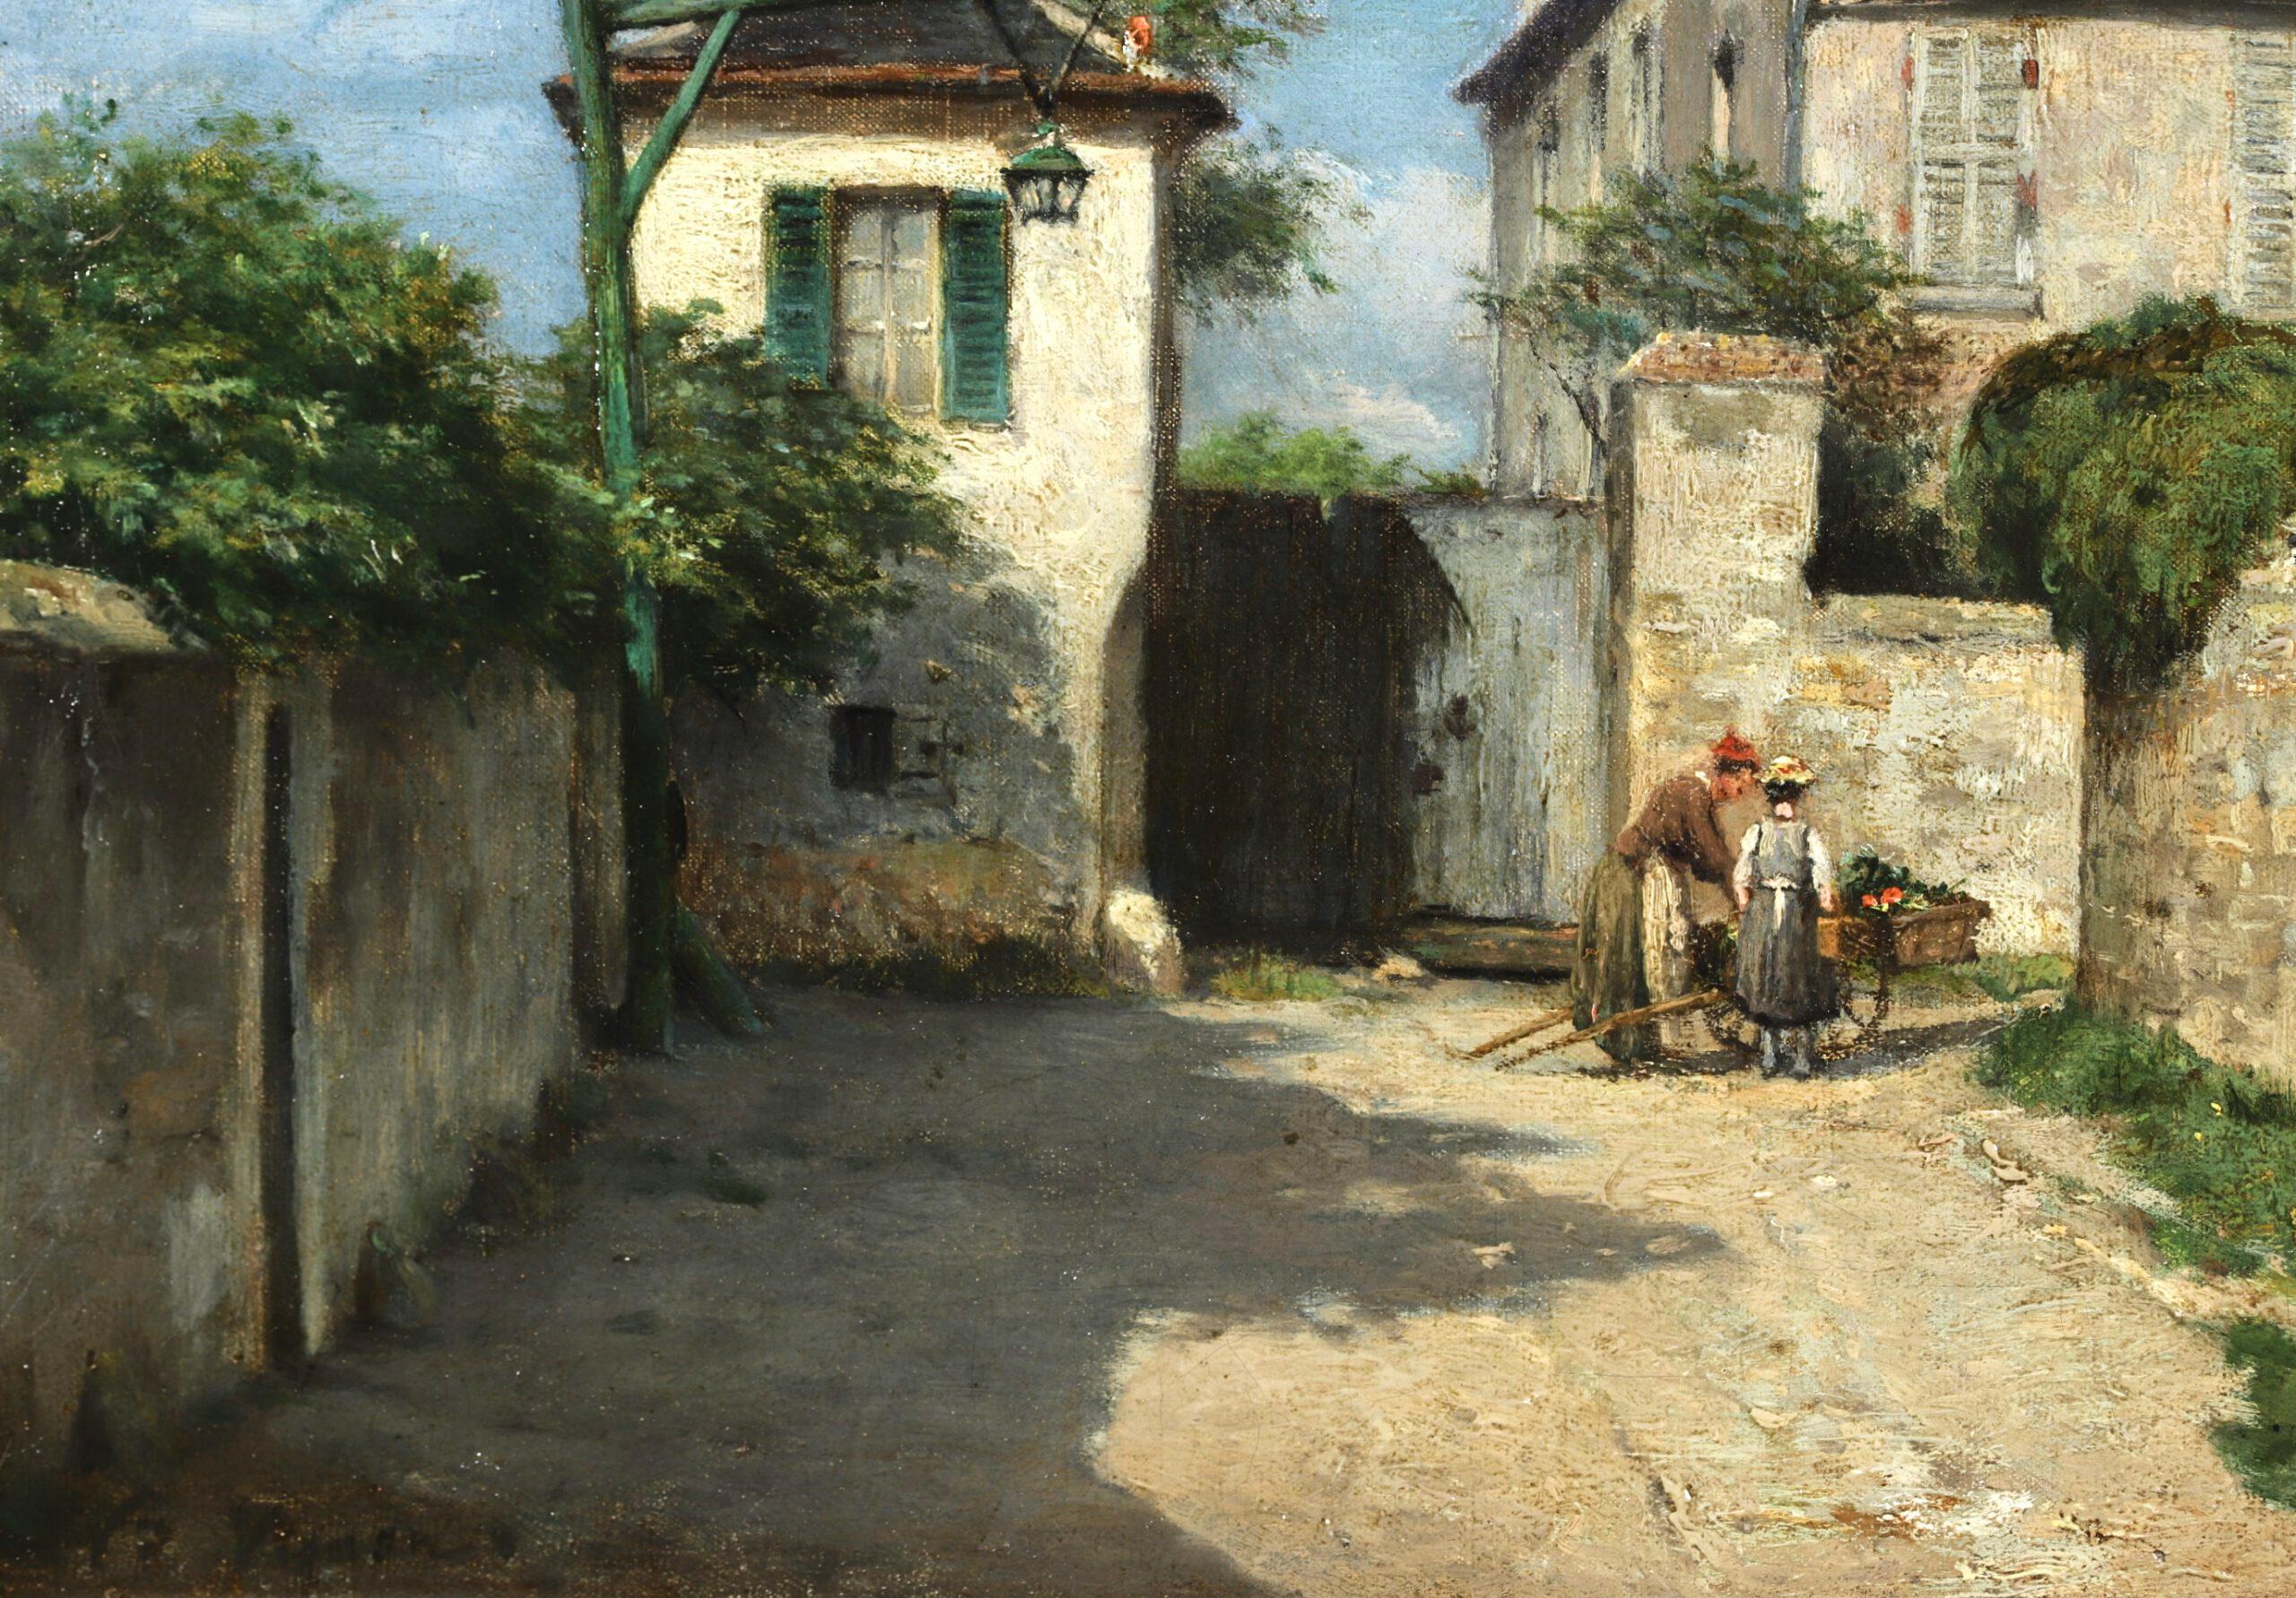 The Village - Auvers-sur-Oise - Impressionist Landscape Painting - Victor Vignon For Sale 2